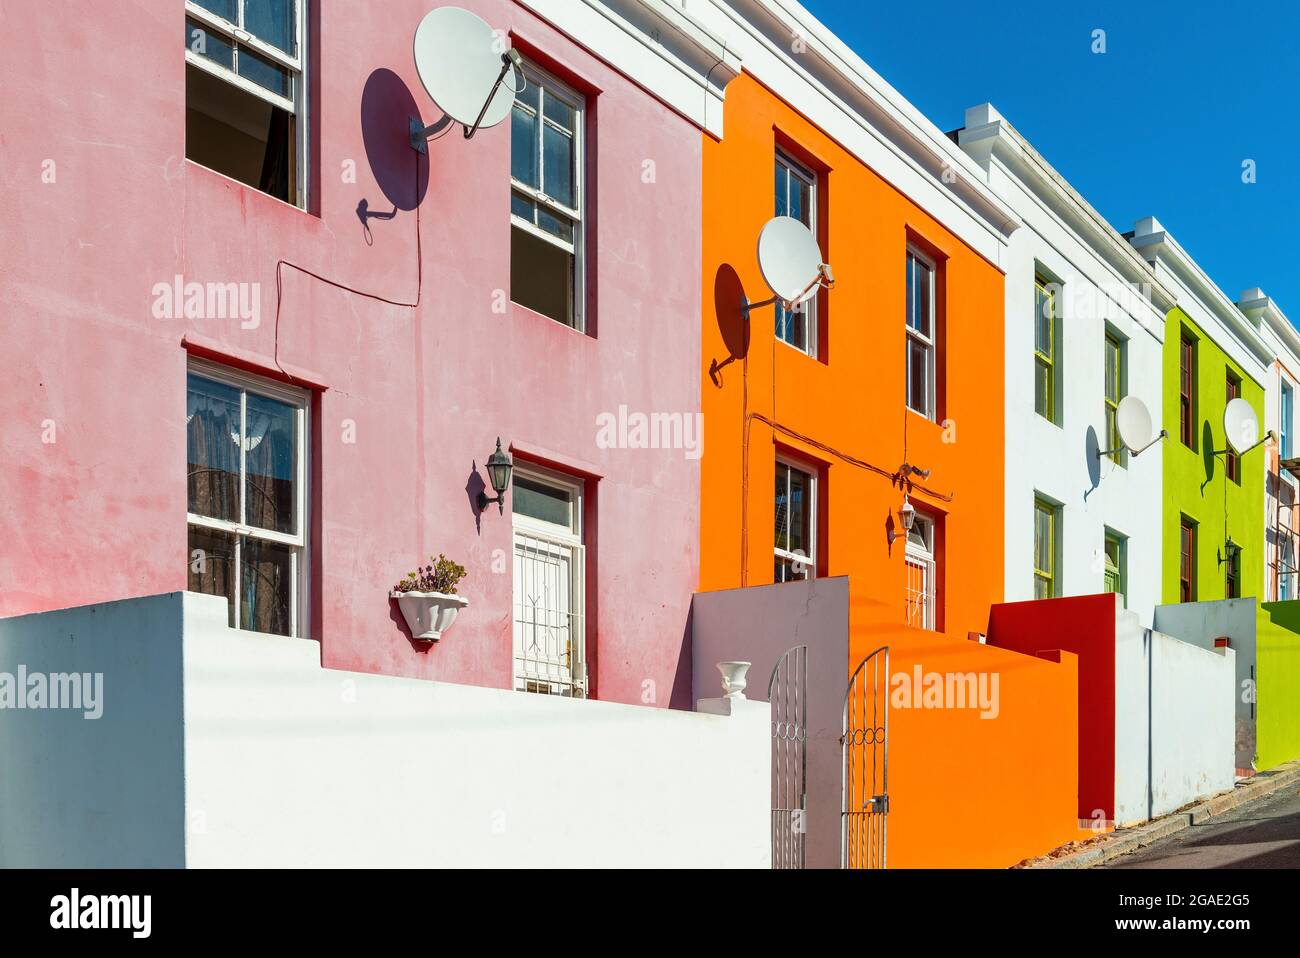 Bo Kaap malay quartier architecture colorée, le Cap, Afrique du Sud. Banque D'Images